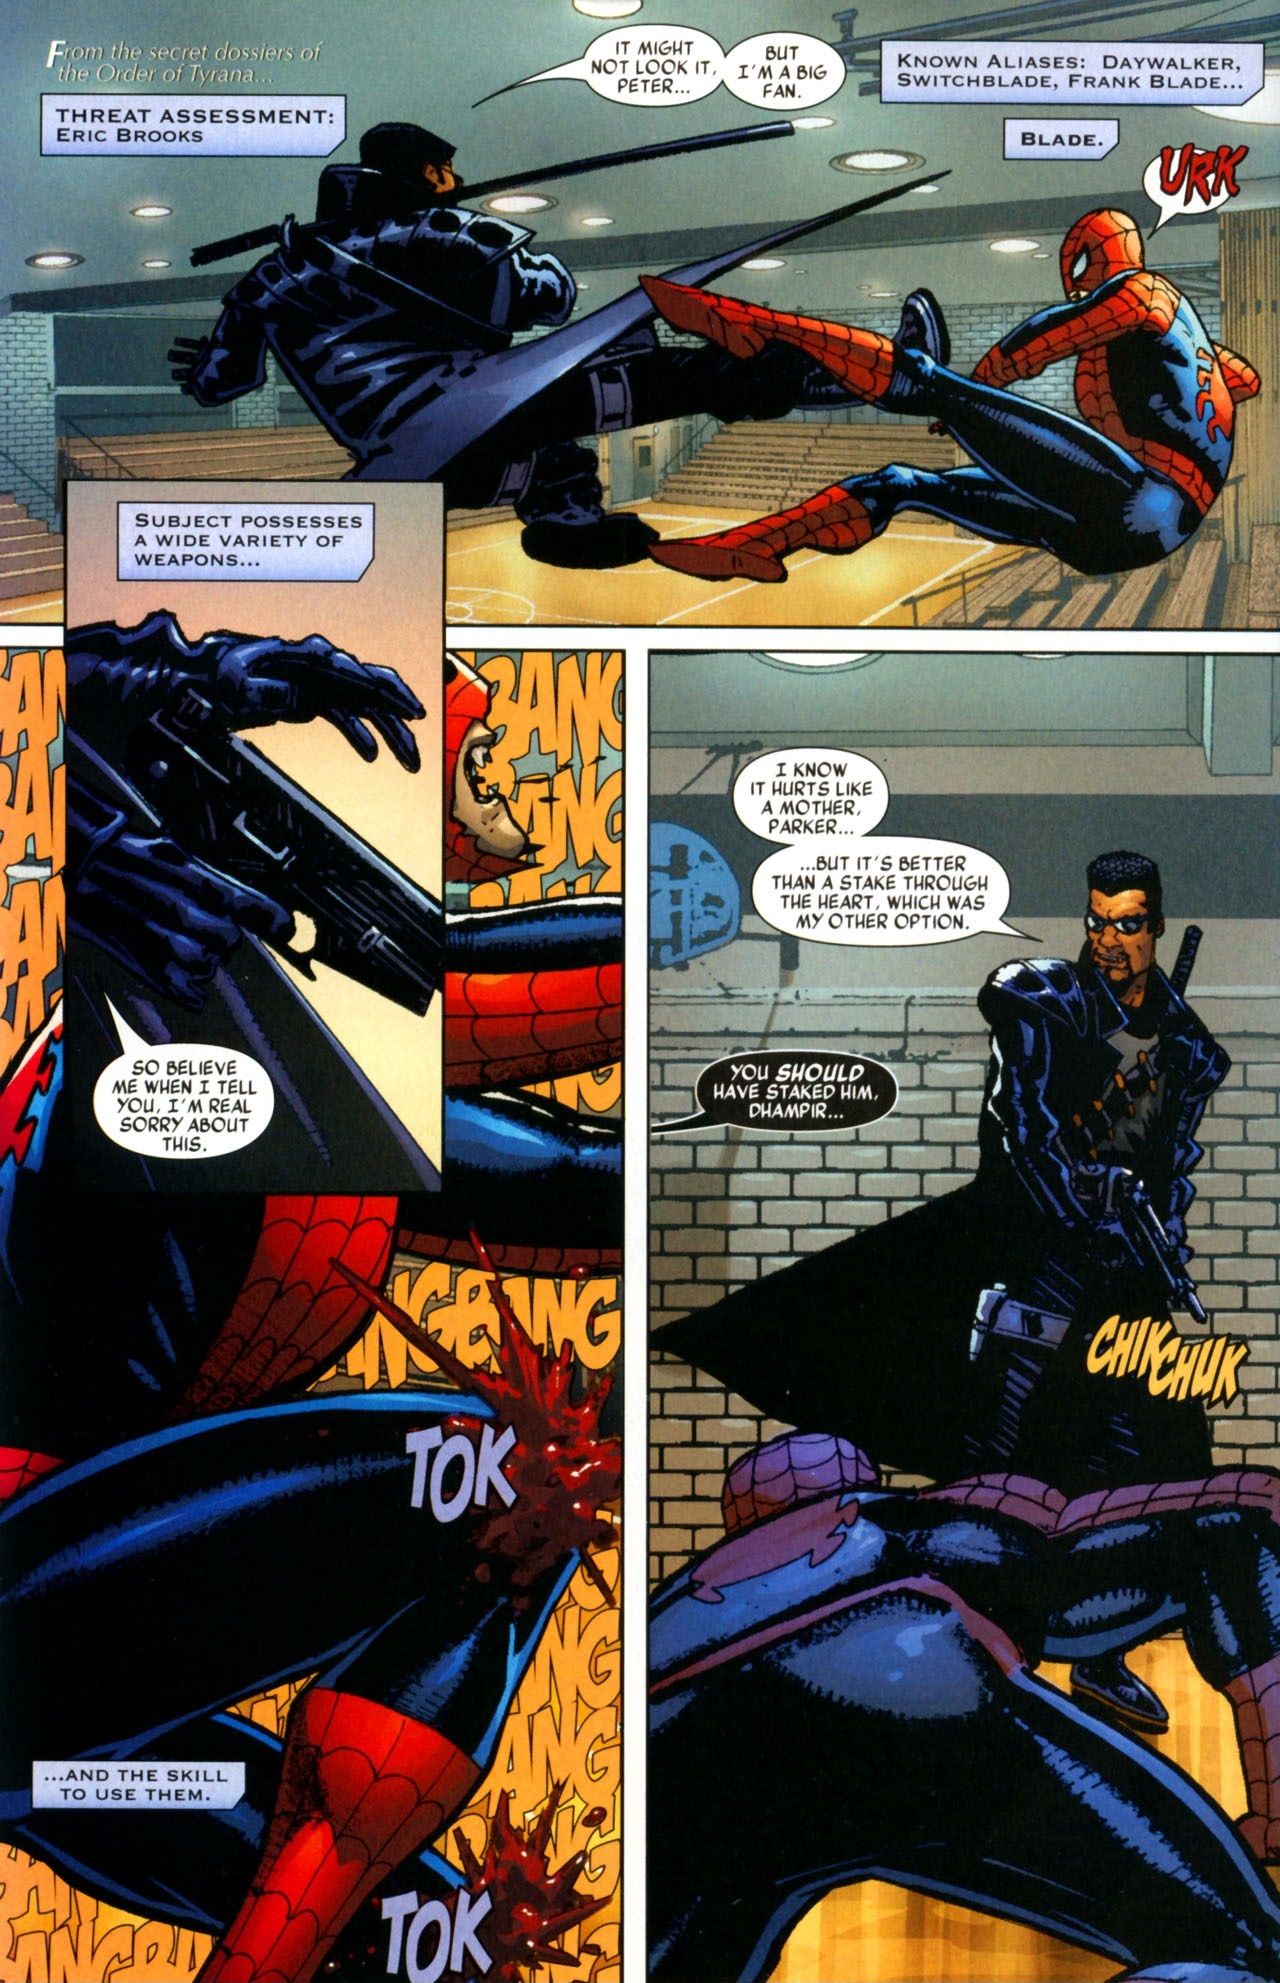 Blade shoots vampire Spider-Man